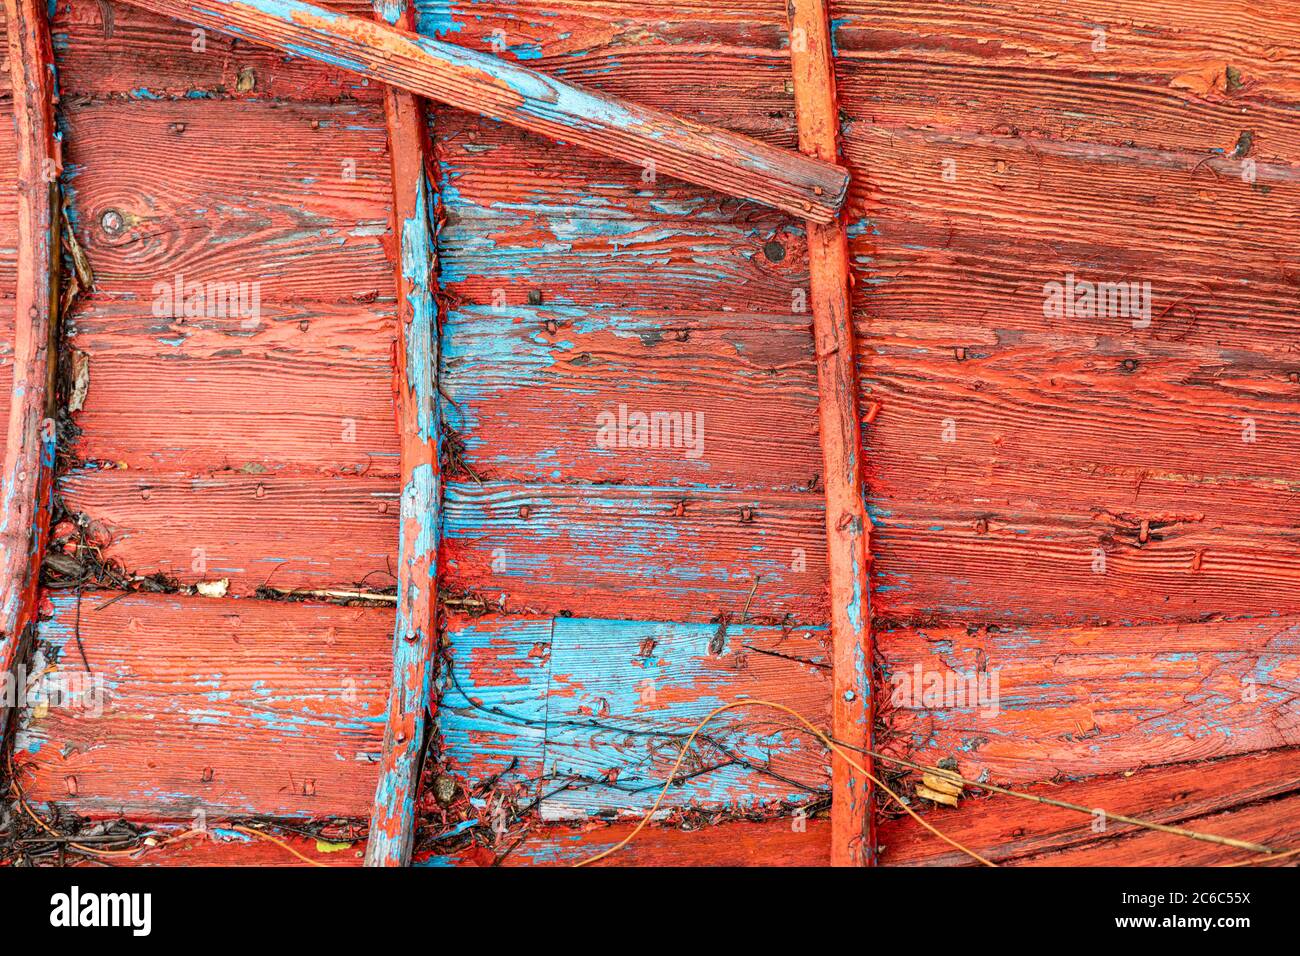 Strati di vernice rosso e blu all'interno di un vecchio battello a remi in legno Foto Stock